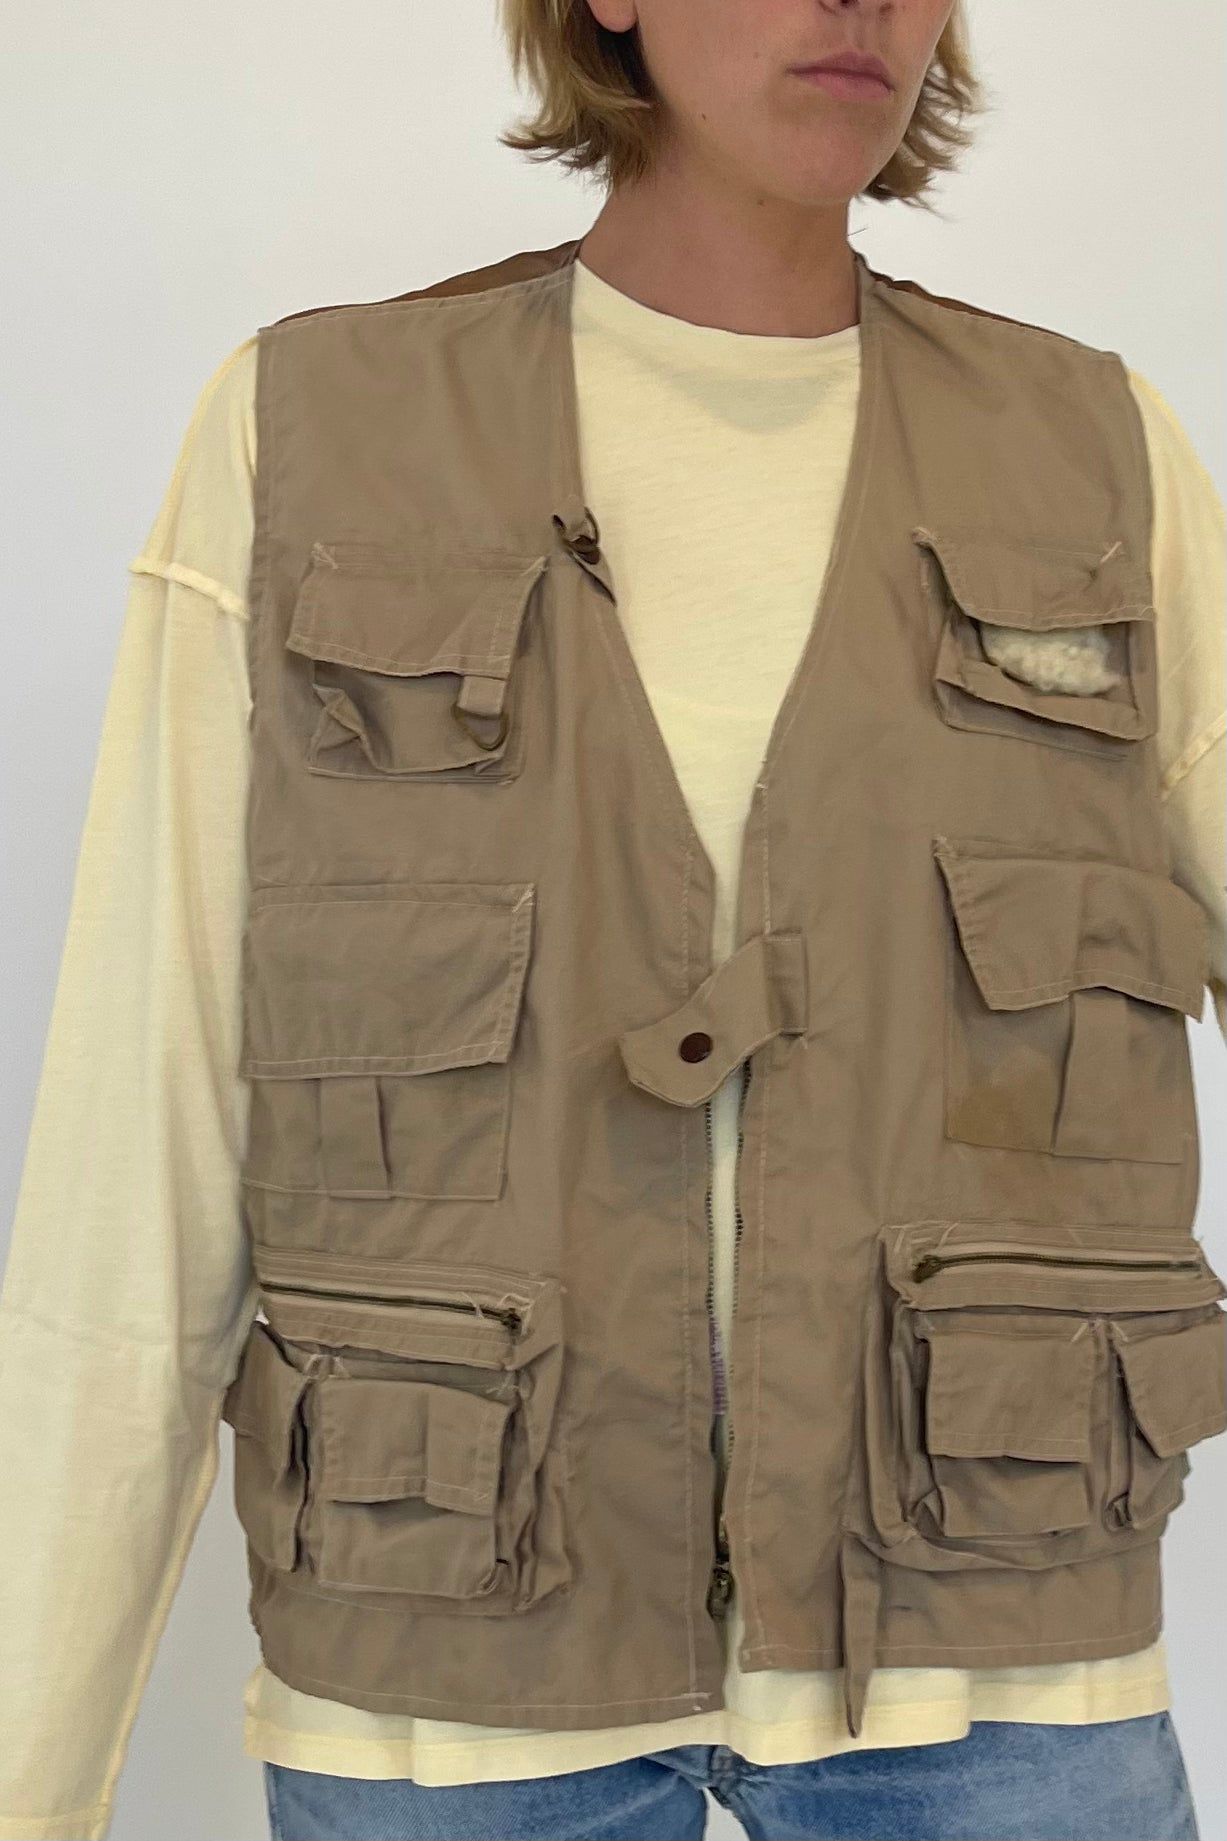 Get best design of fishing vest for you